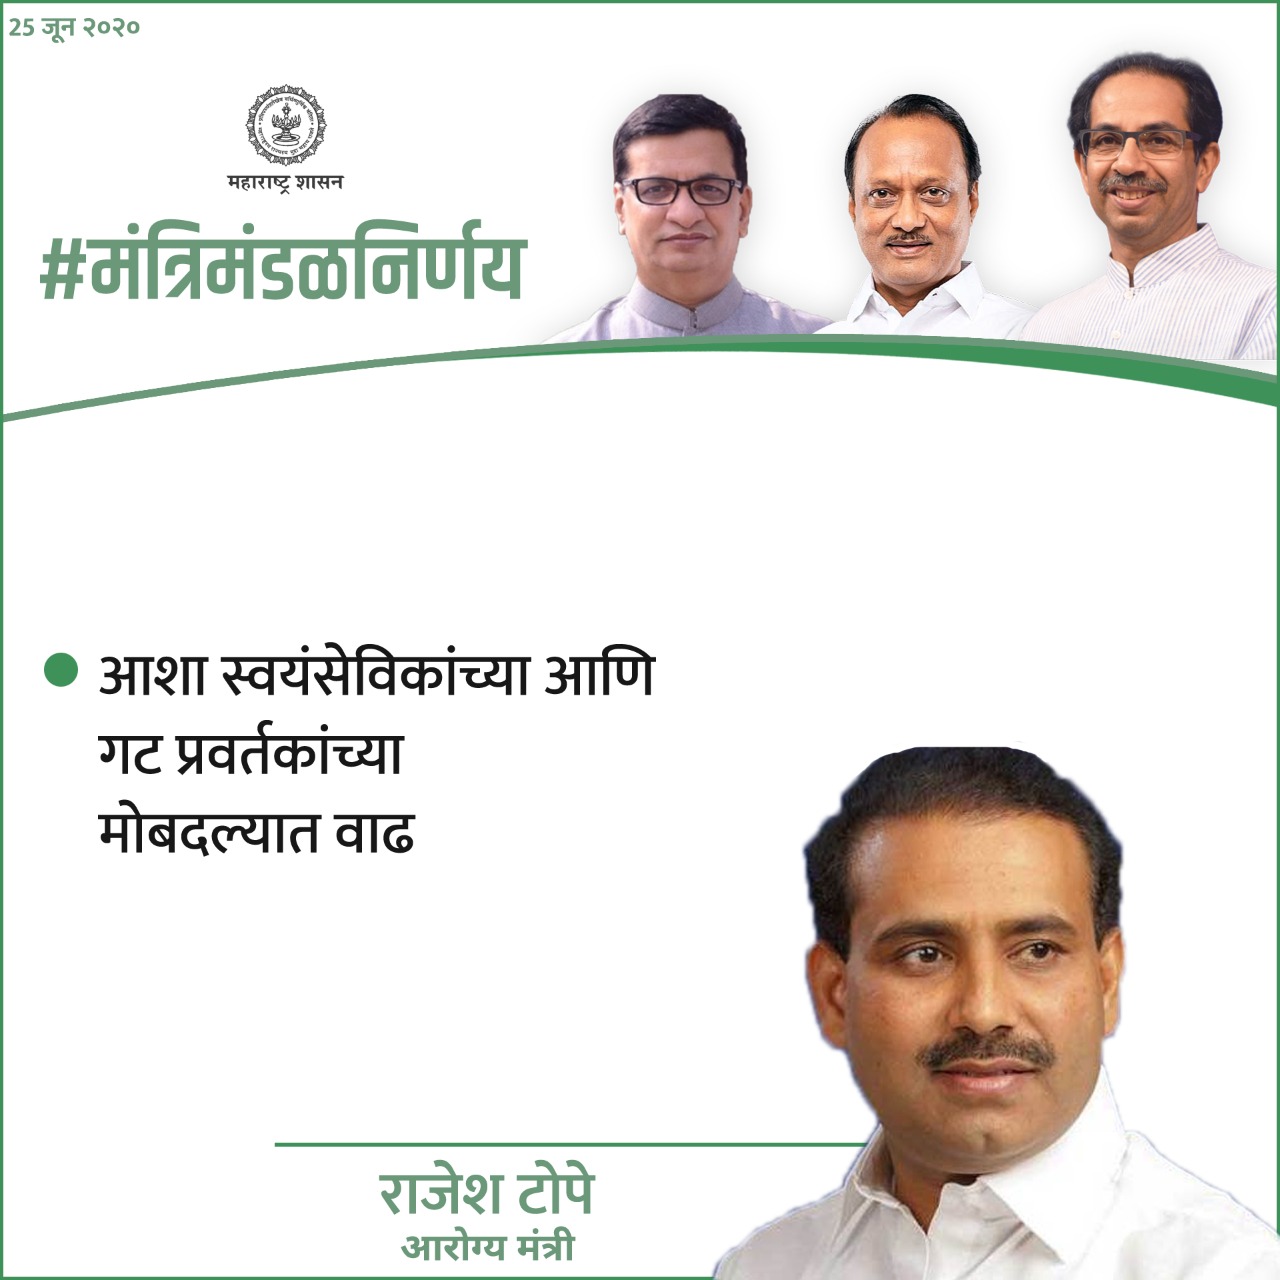 आशा स्वयंसेविकांच्या आणि गट प्रवर्तकांच्या मोबदल्यात वाढ.राज्यातील आशा स्वयंसेविकांना मोठा दिलासा. (Courtesy: CMO Maharashtra)